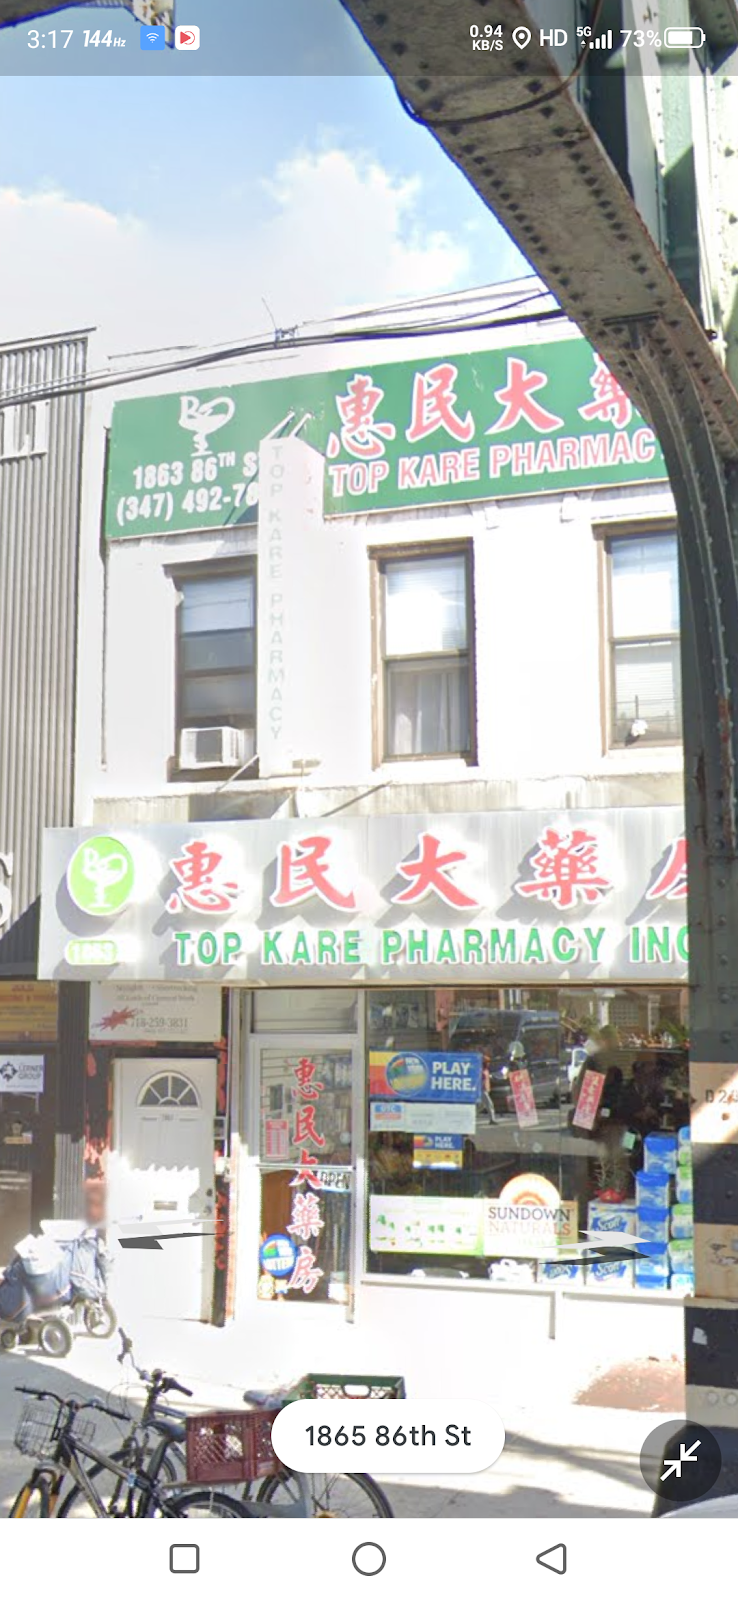 Top Kare Pharmacy INC - pharmacy  | Photo 1 of 1 | Address: 1863 86th St, Brooklyn, NY 11214, USA | Phone: (347) 492-7831